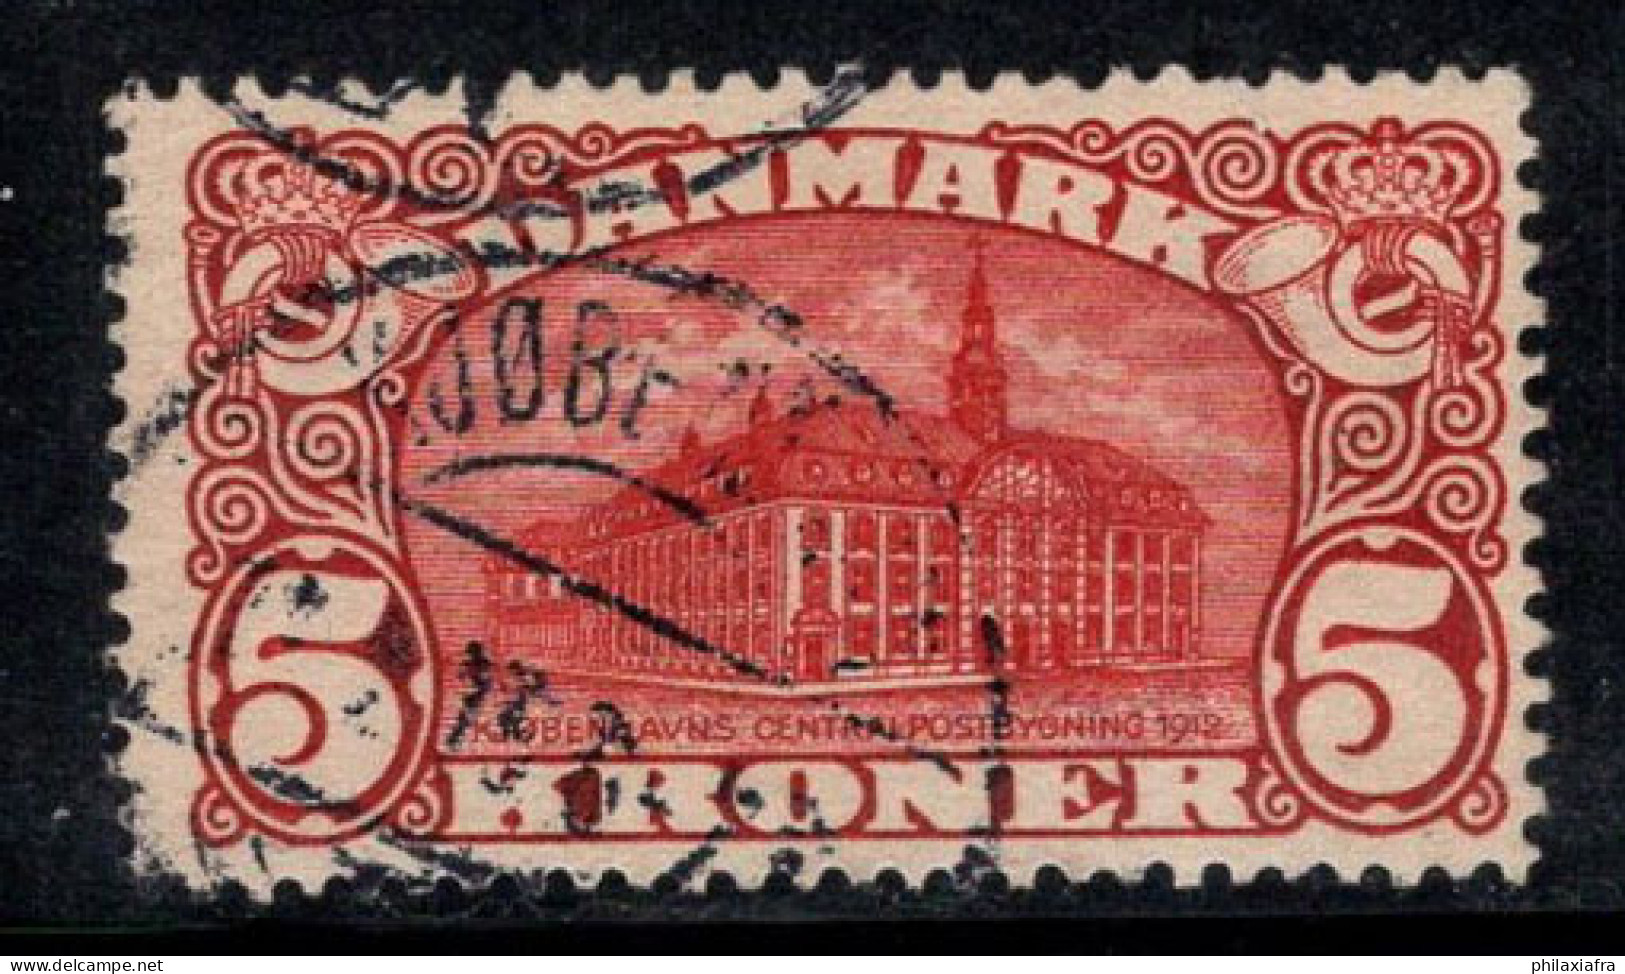 Danemark 1912 Mi. 66 Oblitéré 100% 5 KR, Bâtiment De La Poste - Used Stamps